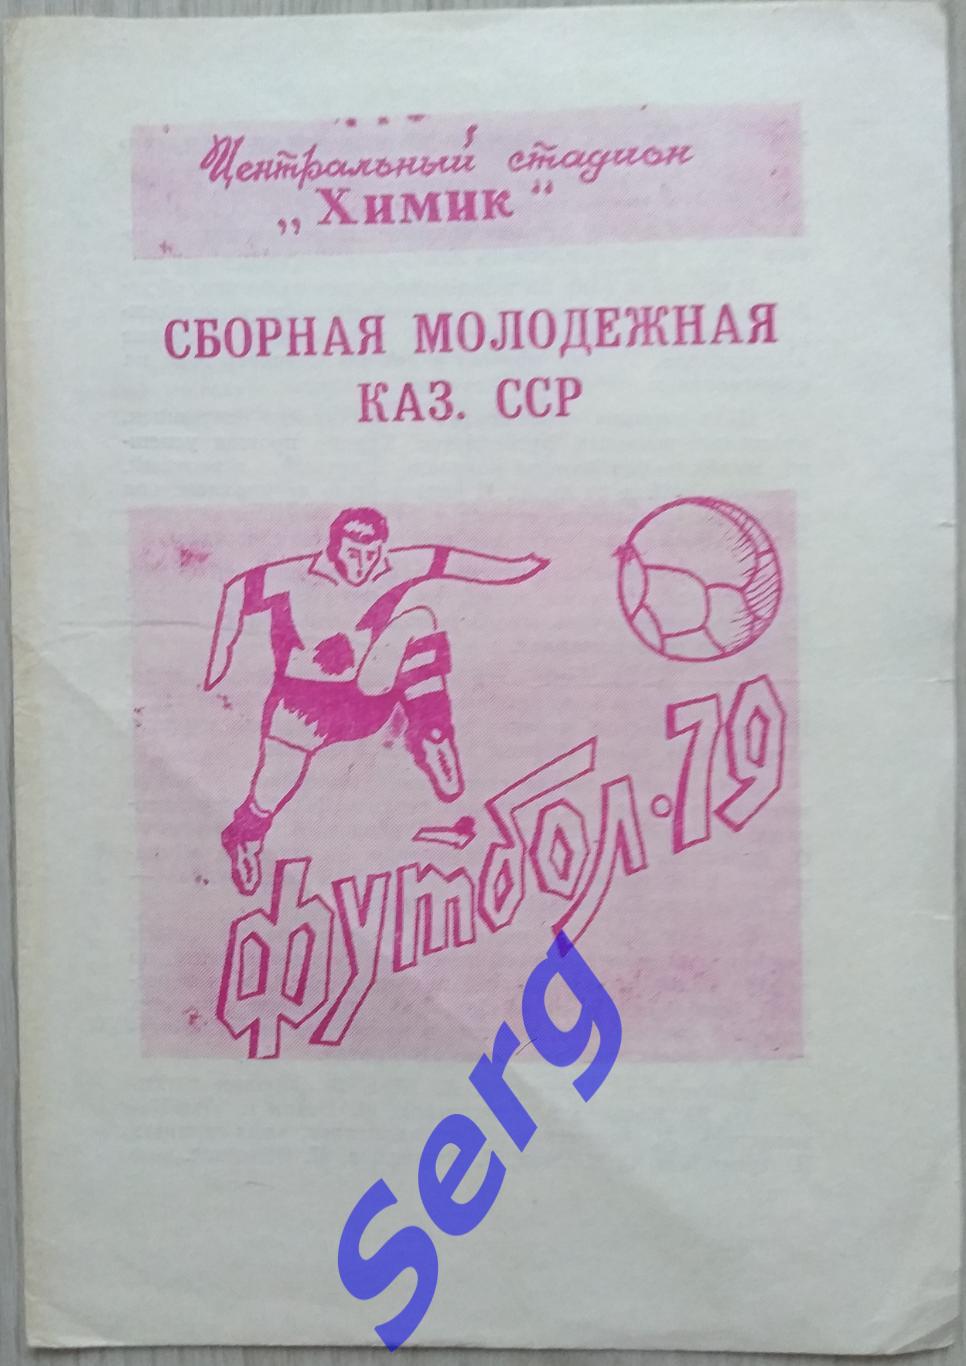 Химик Джамбул - сборная молодежная Казахской ССР - 12 ноября 1979 год